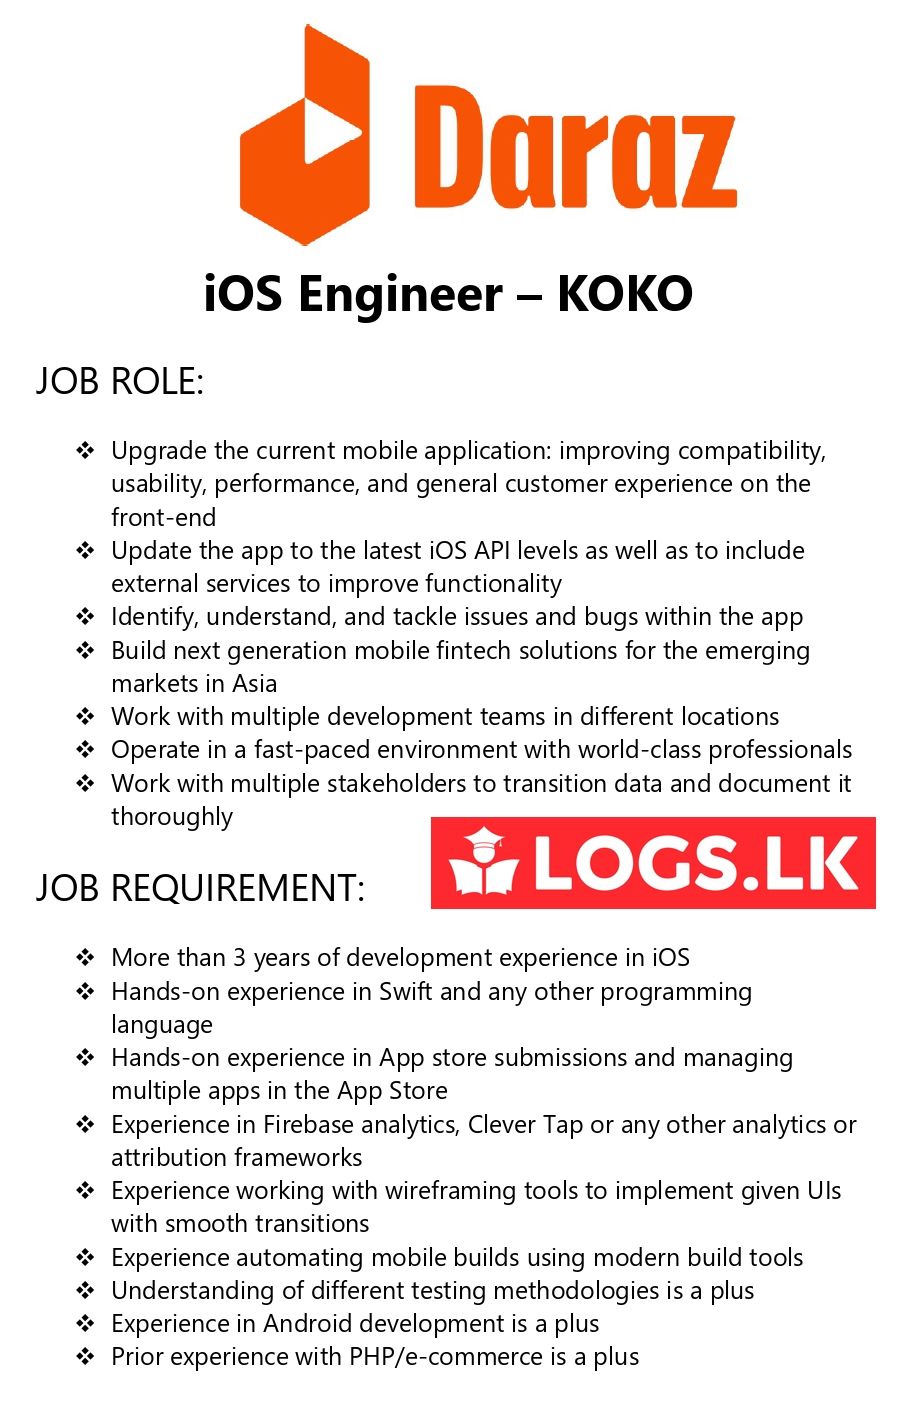 iOS Engineer - KOKO Job Vacancy - Daraz Sri Lanka Jobs Vacancies Details